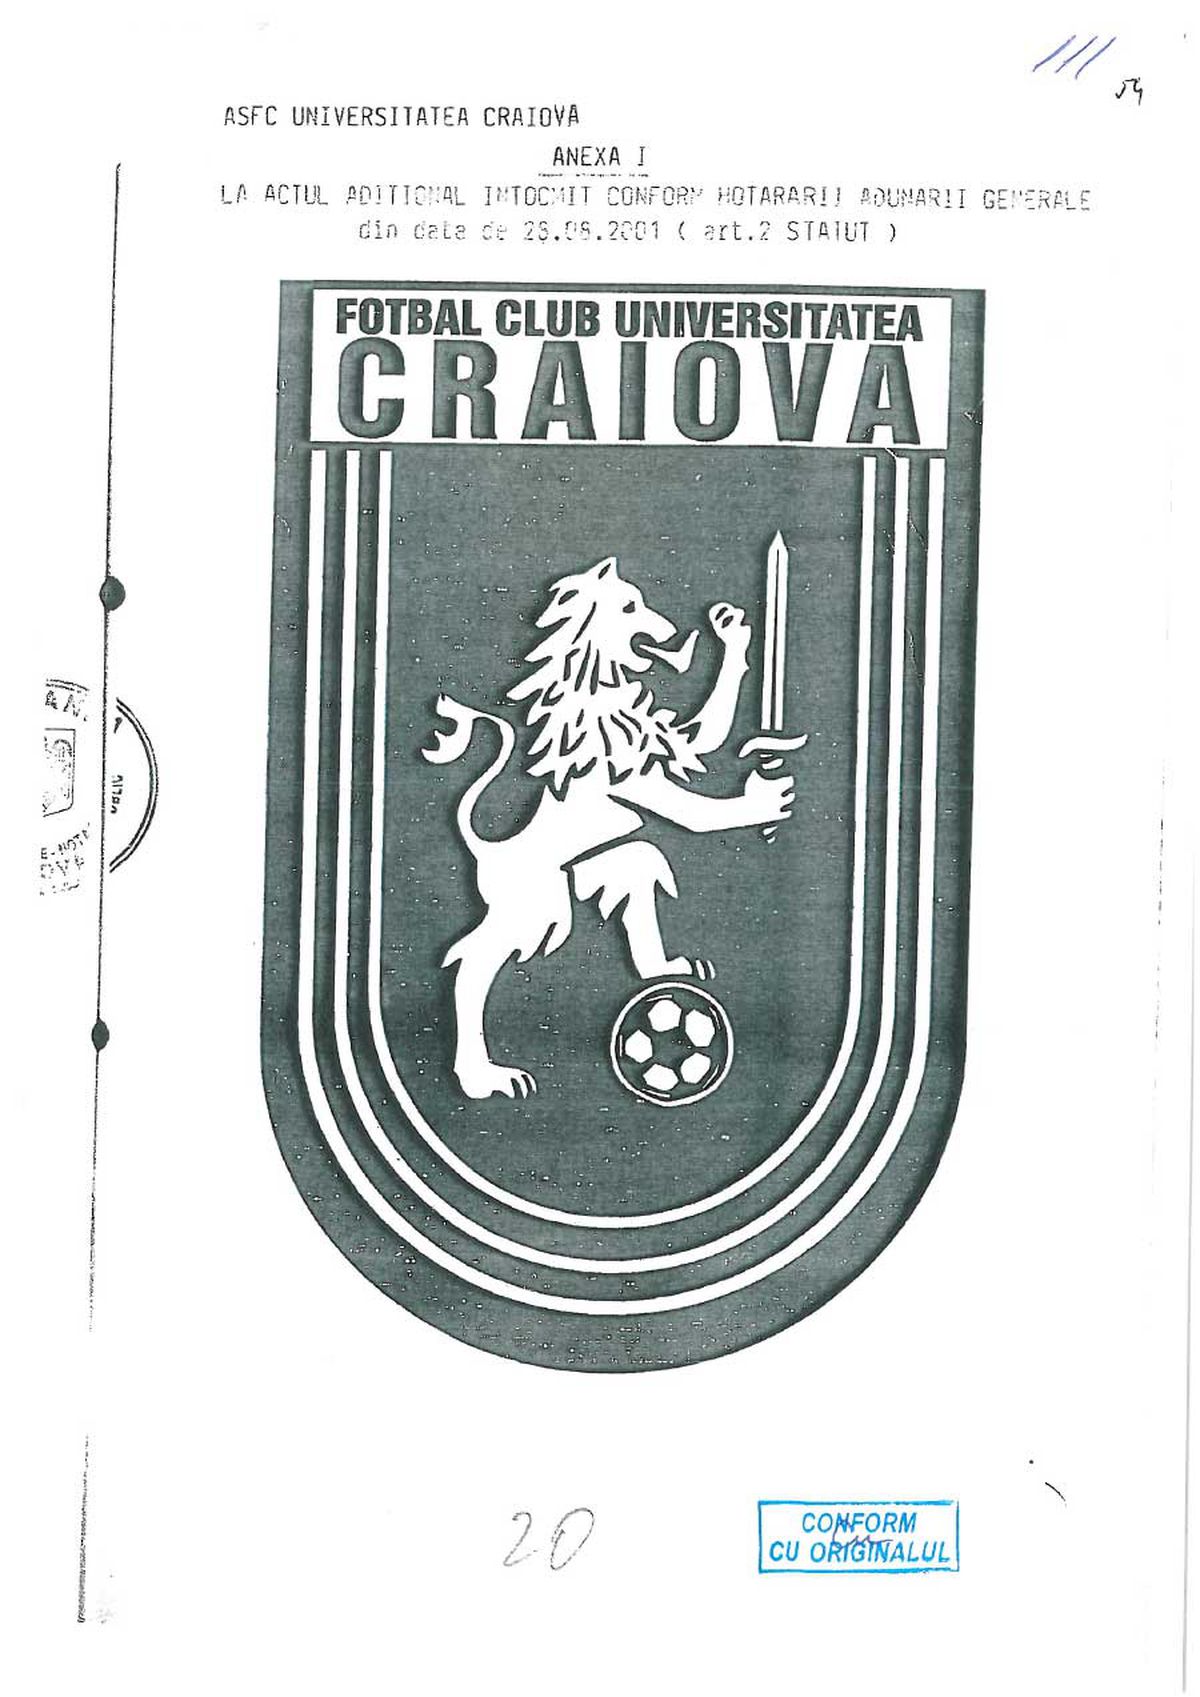 Documentele publicate de FCU Craiova: Adrian Mititelu susține că echipa sa deține sigla și palmaresul Universității